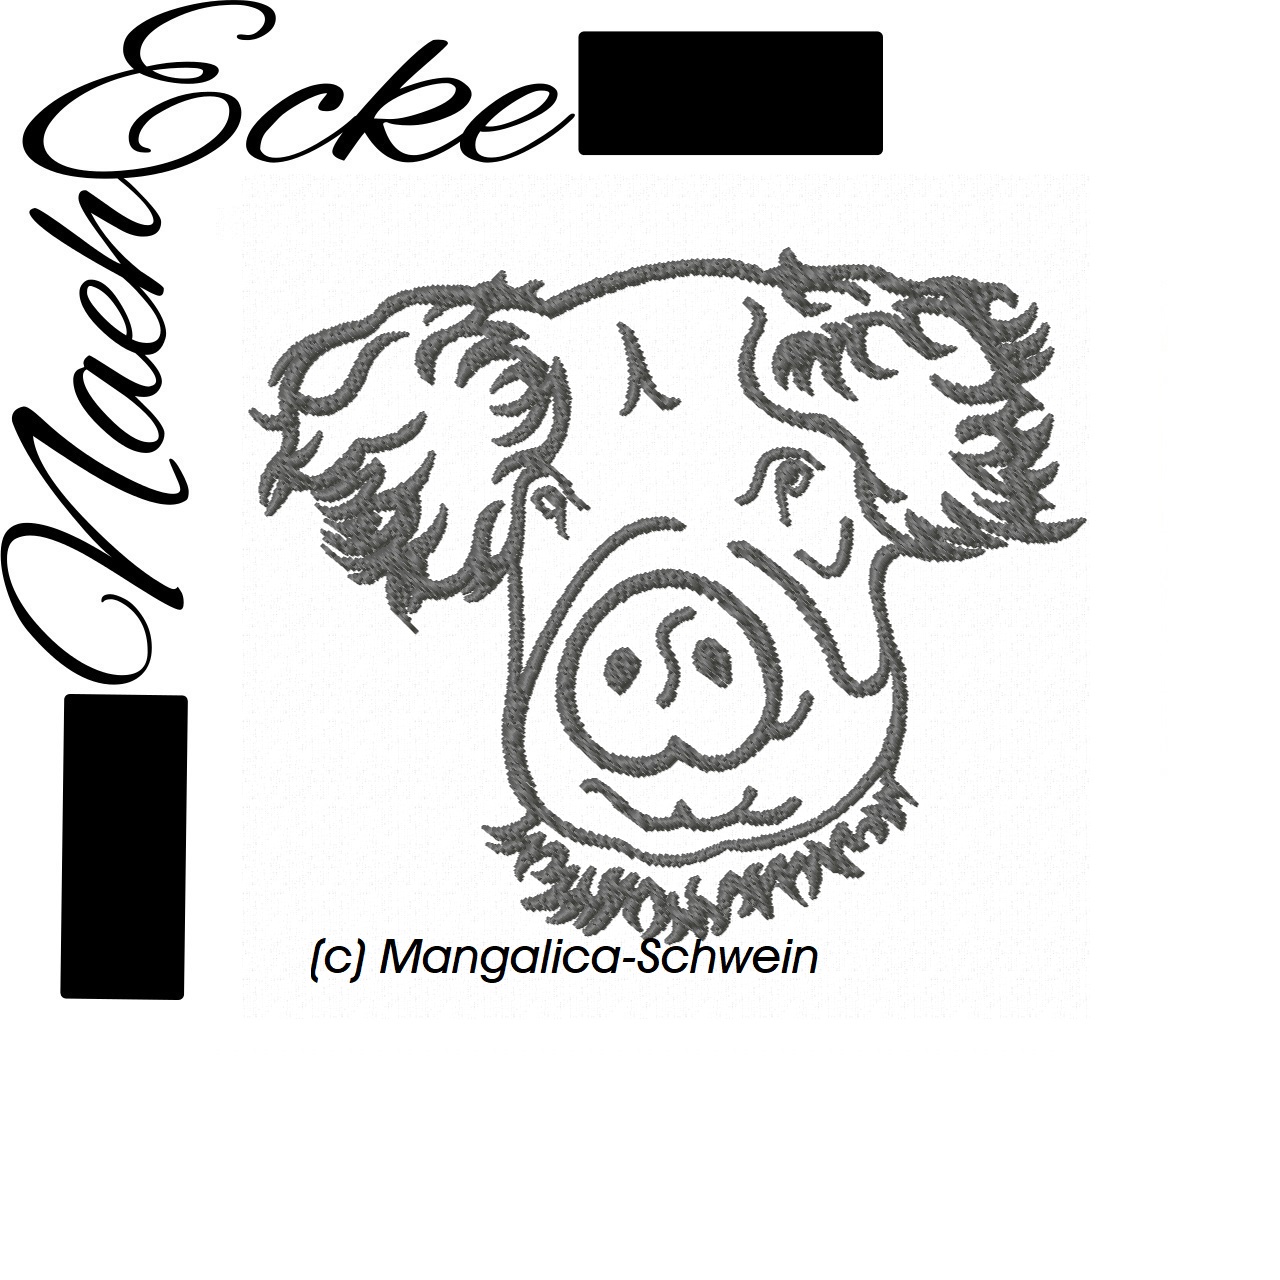 Schwein 2 / Mangalica-Schwein